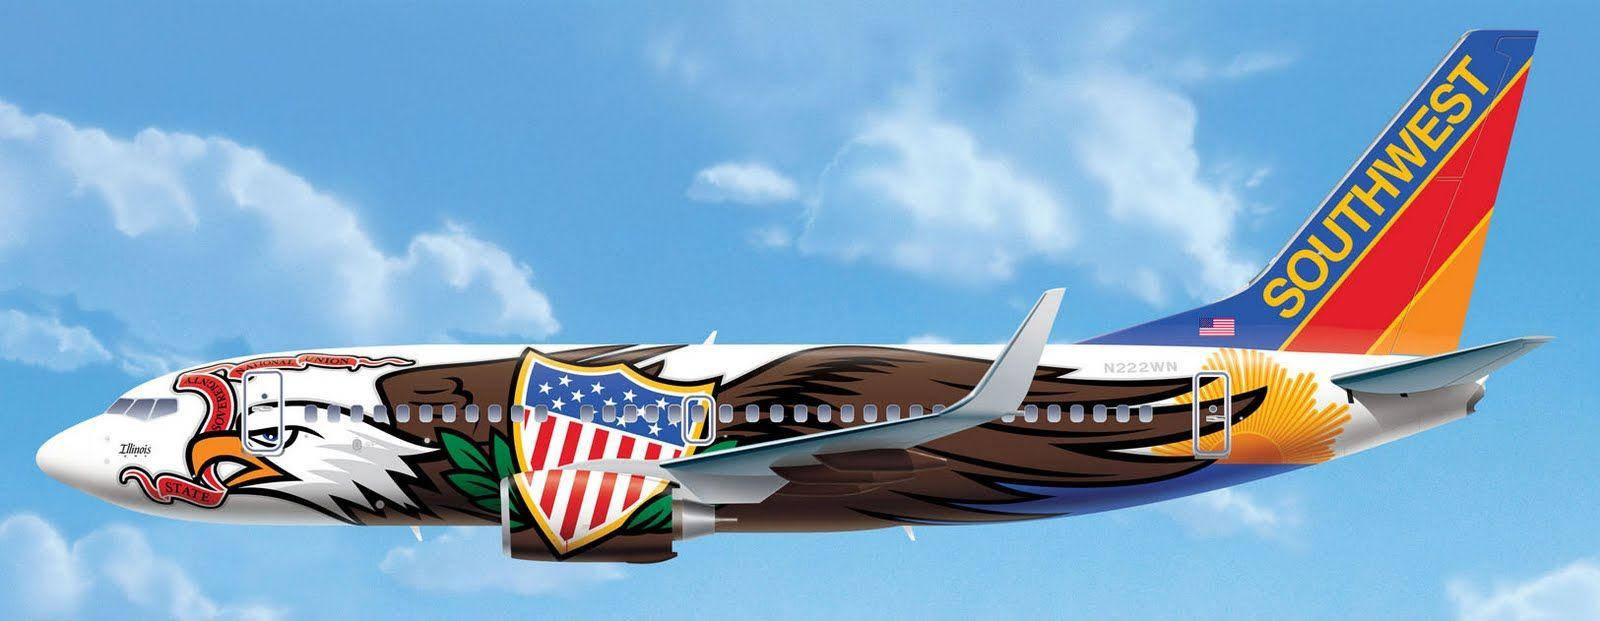 Örnflygplan Southwest Airlines Wallpaper